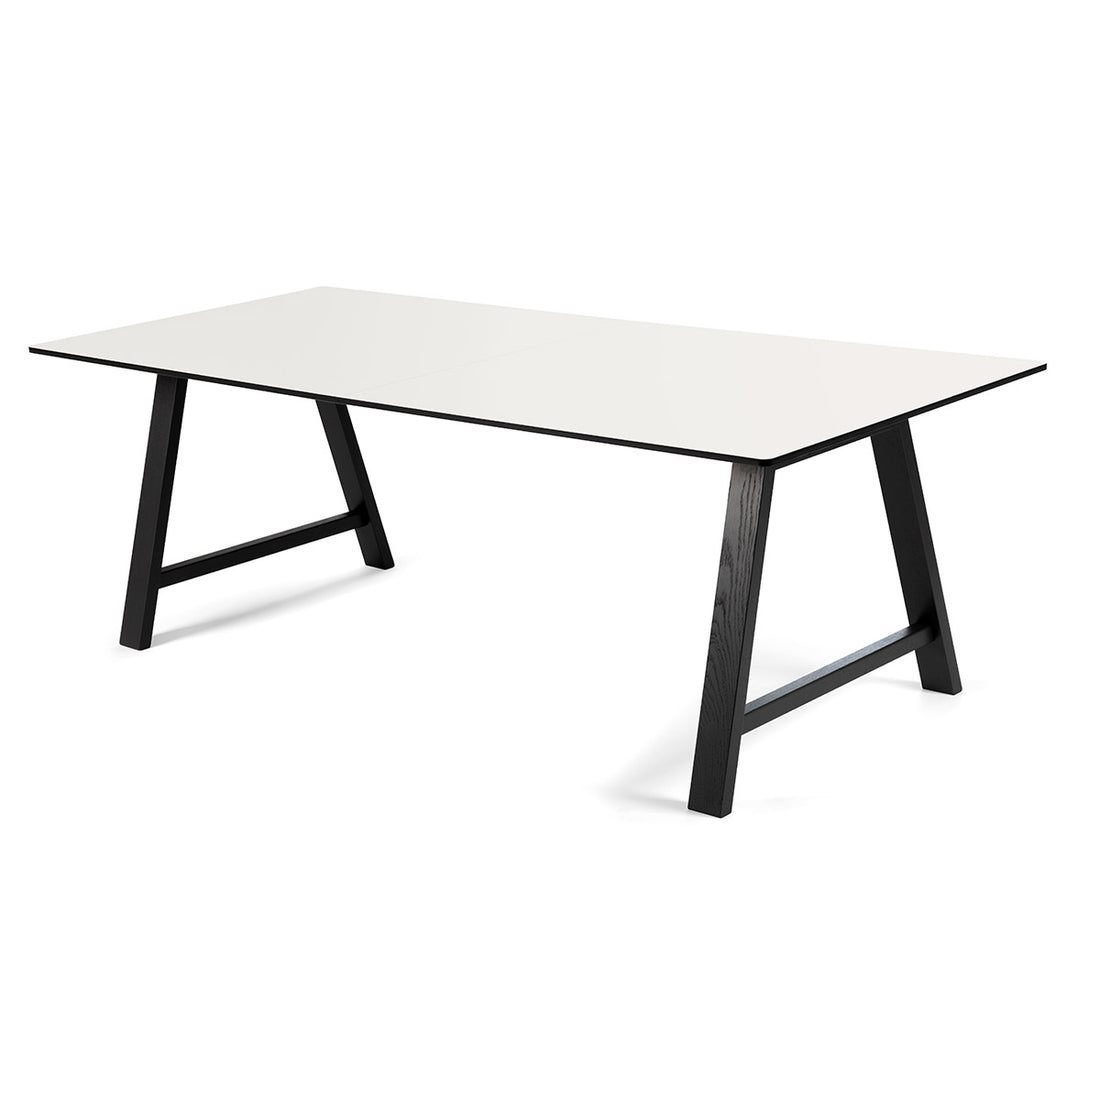 Andersen Furniture T1 udtræksbord i hvid laminat - understel i sort - 95x180xH72,5 cm - DesignGaragen.dk.